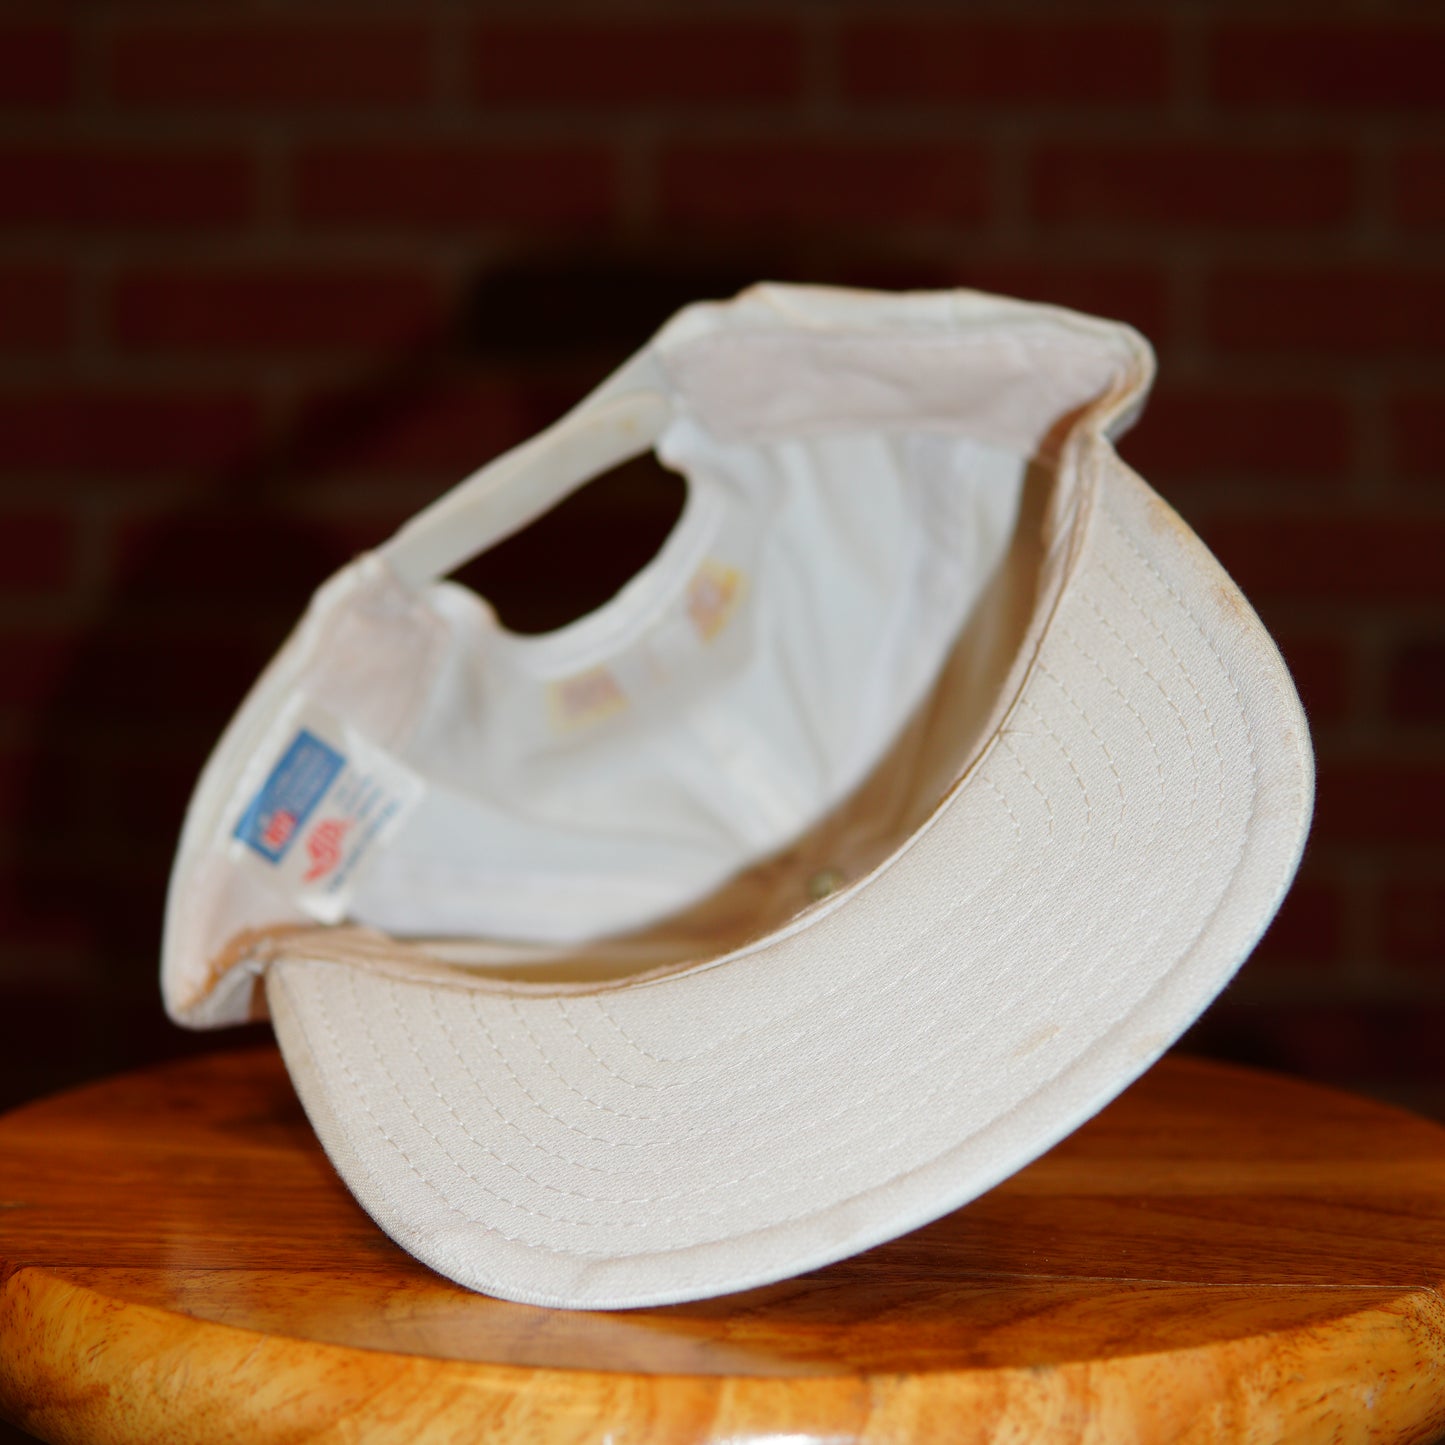 VTG 1991 Super Bowl XXV Snapback Hat